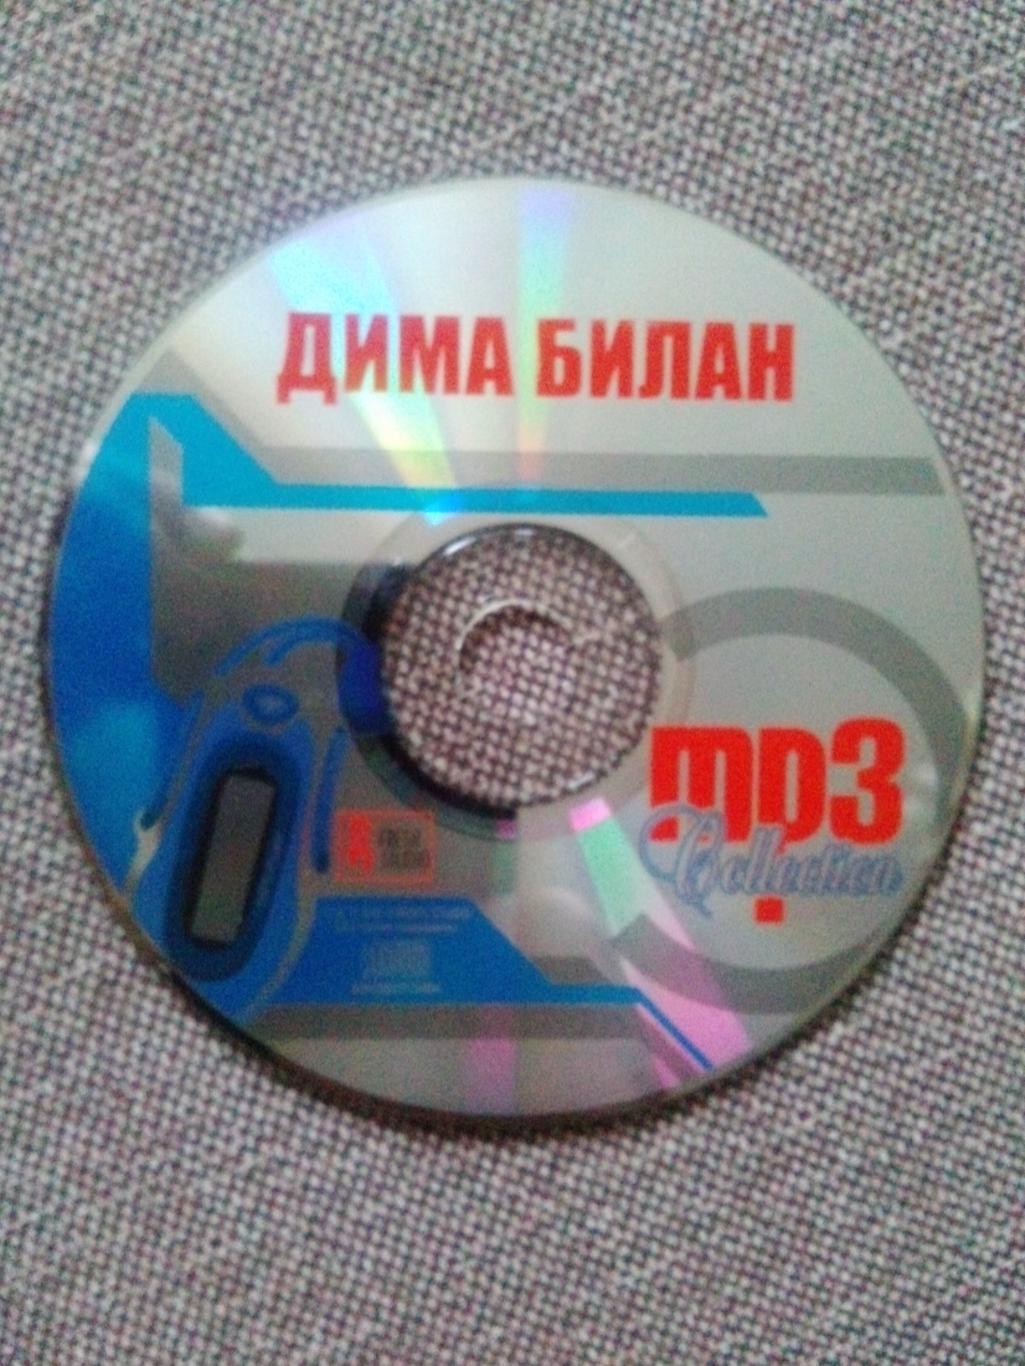 MP - 3 CD диск : Дима Билан 2004 - 2008 гг. (5 альбомов) Российская поп - музыка 5